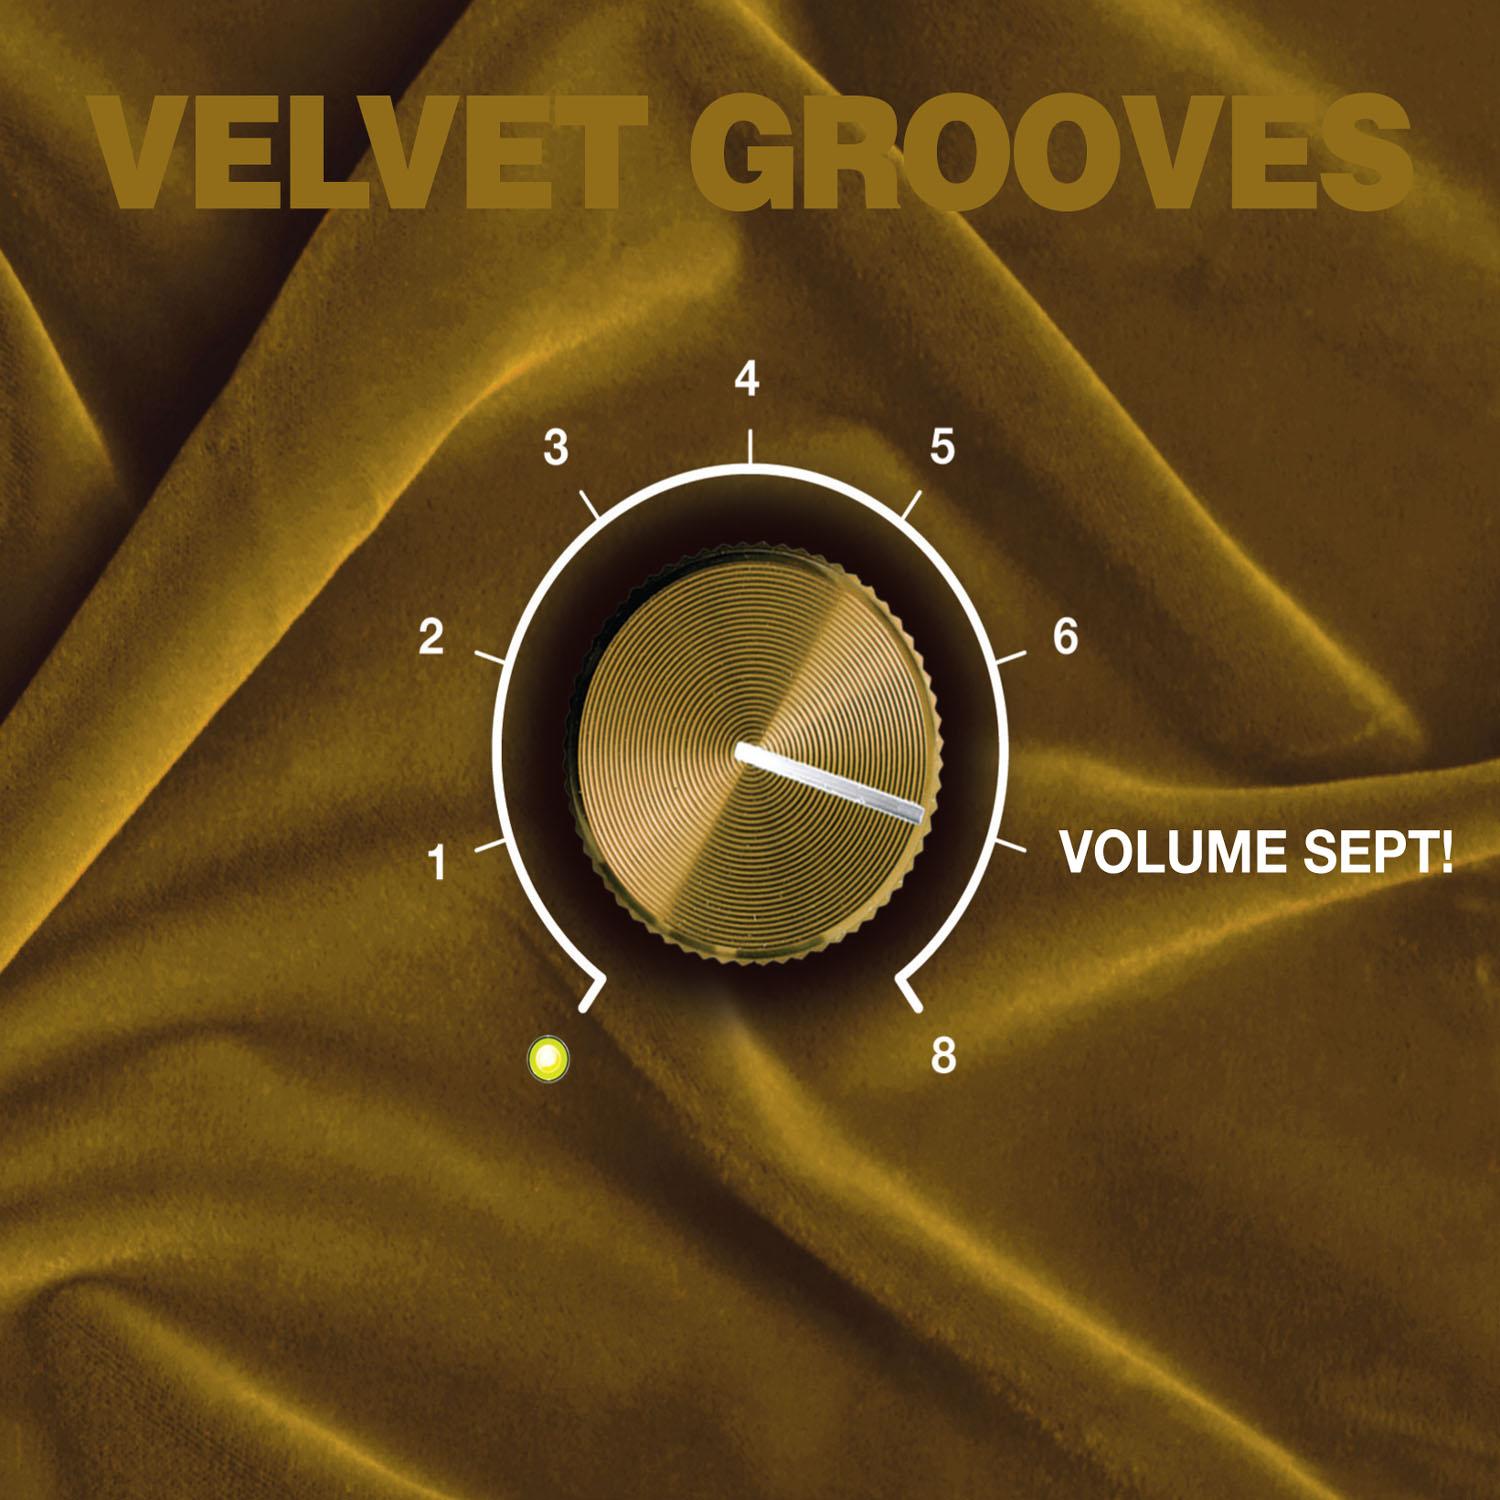 Velvet Grooves Volume Sept!